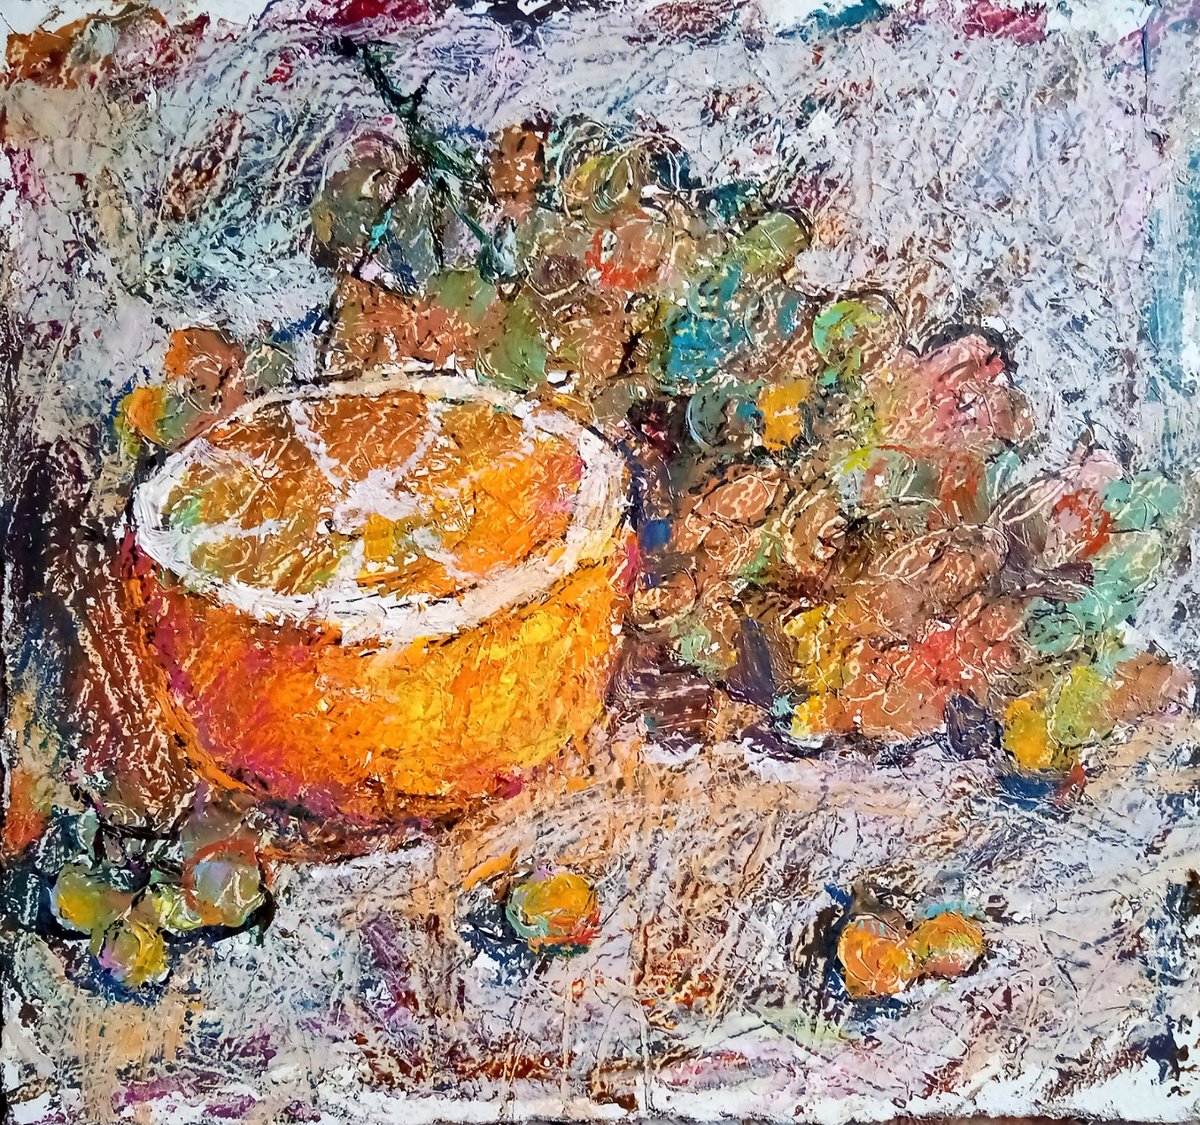 Grapes & orange #2 by Valerie Lazareva